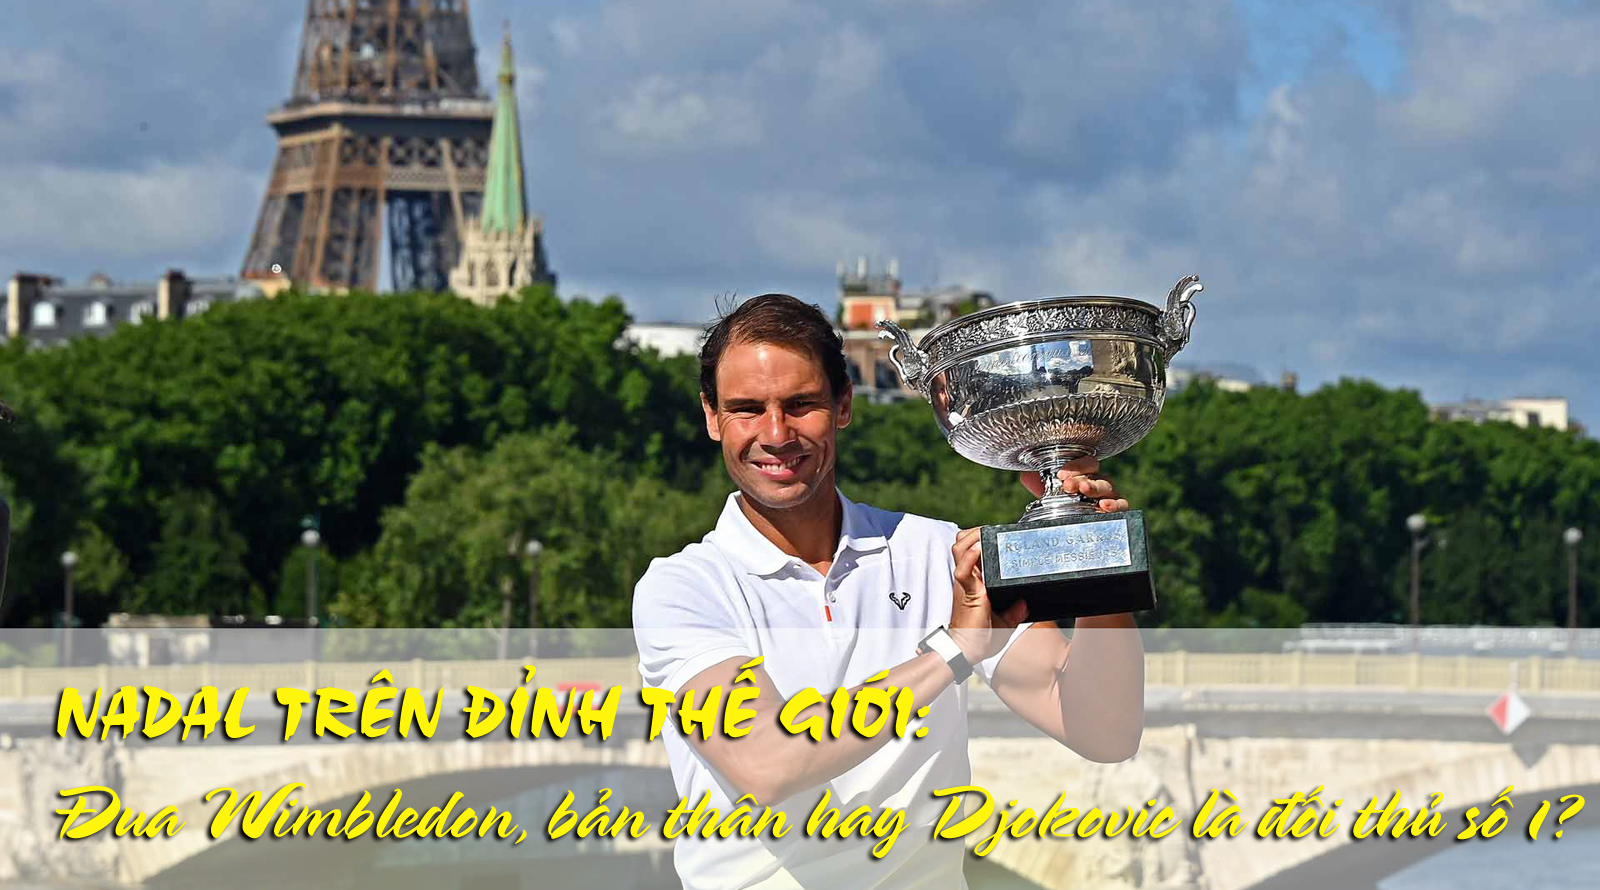 Nadal trên đỉnh thế giới: Đua Wimbledon, bản thân hay Djokovic là đối thủ số 1? - 1